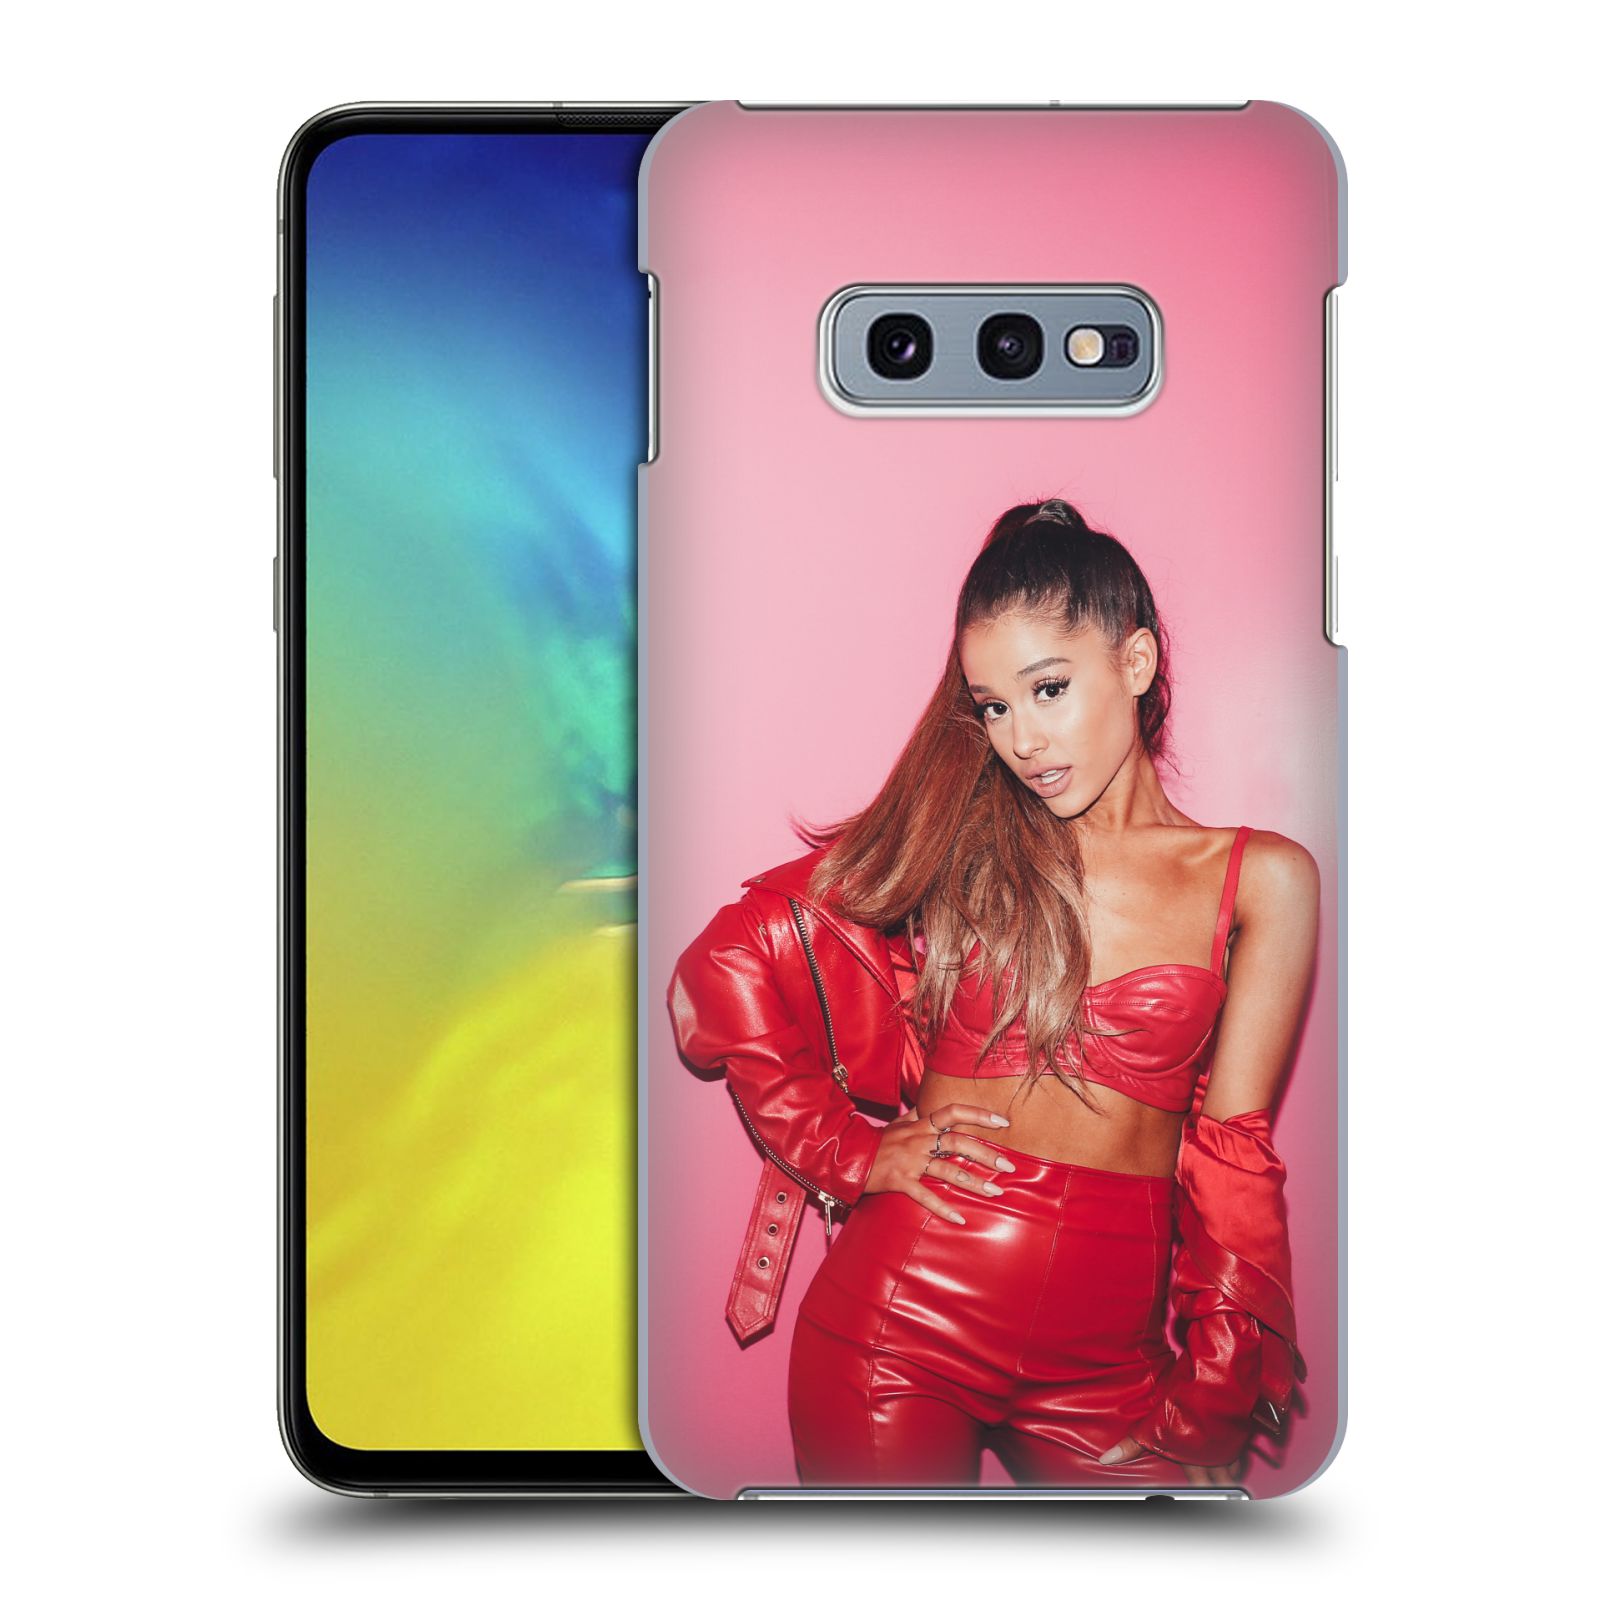 Pouzdro na mobil Samsung Galaxy S10e - HEAD CASE - zpěvačka Ariana Grande Dangerous Woman růžová